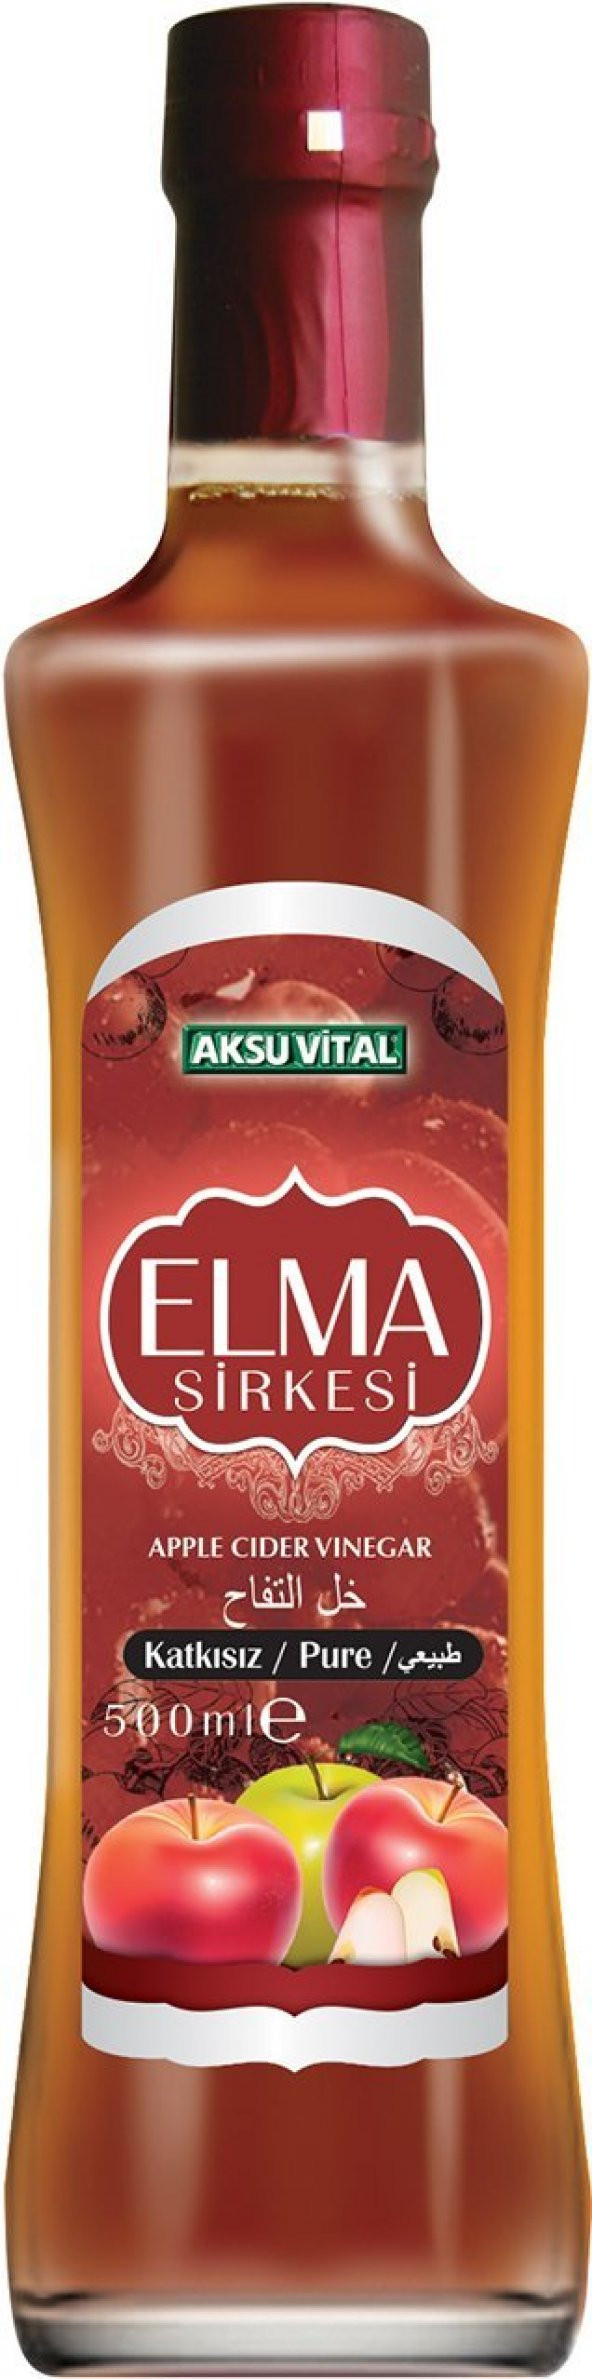 Aksuvital Elma Sirkesi 500 ml